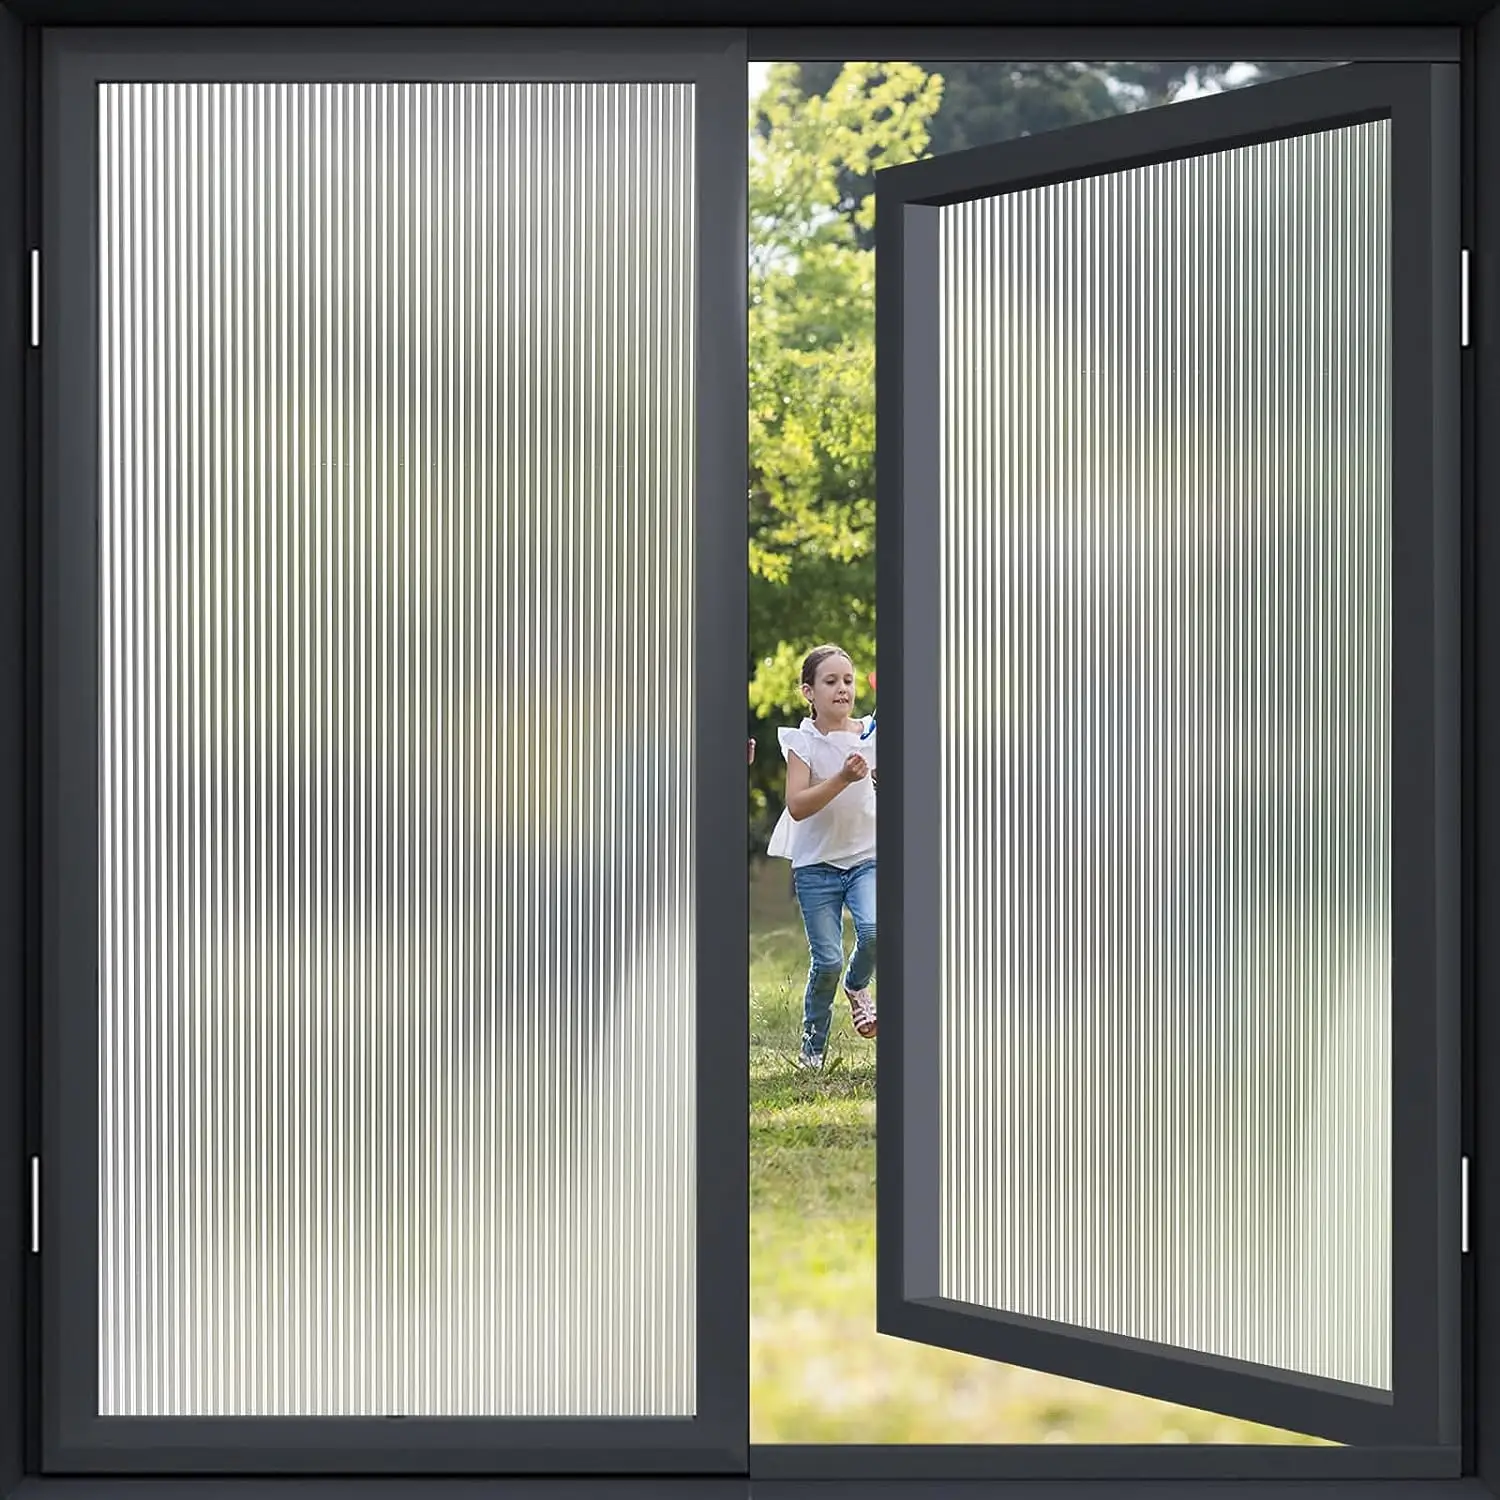 New Design 3D Reeded Glass Film Fosco Decorativo Static Cling privacidade Window Films para Banheiro